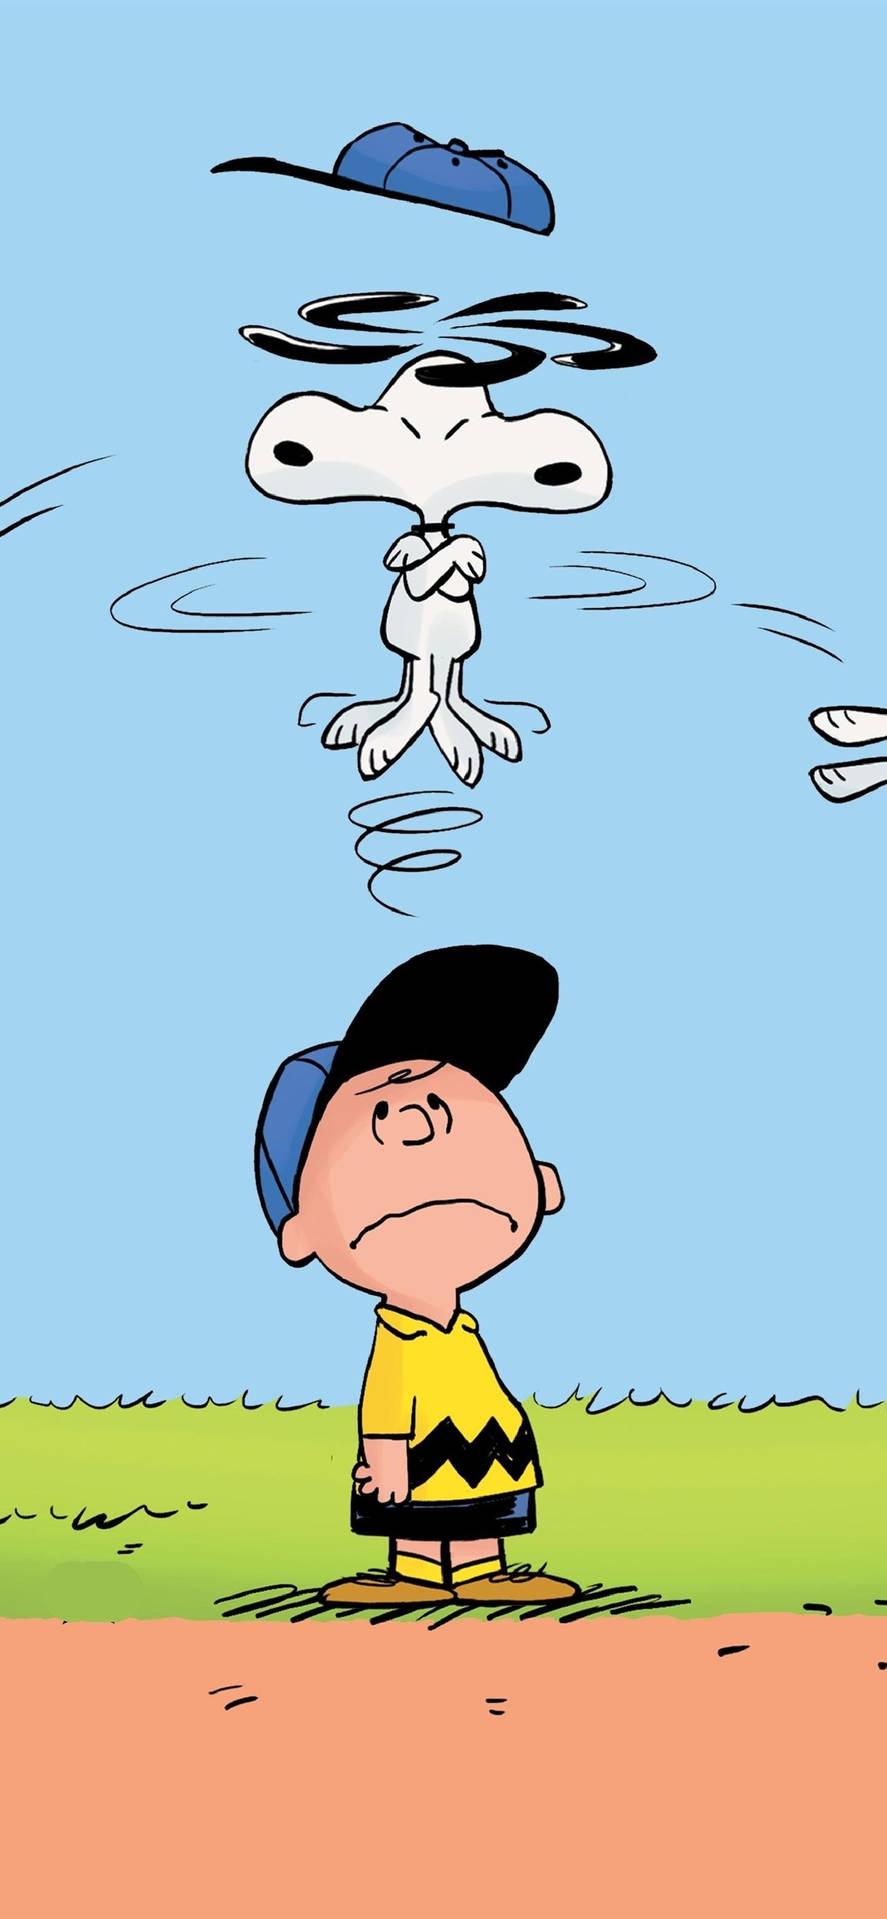 Download Charlie Brown Baseball Cap Wallpaper